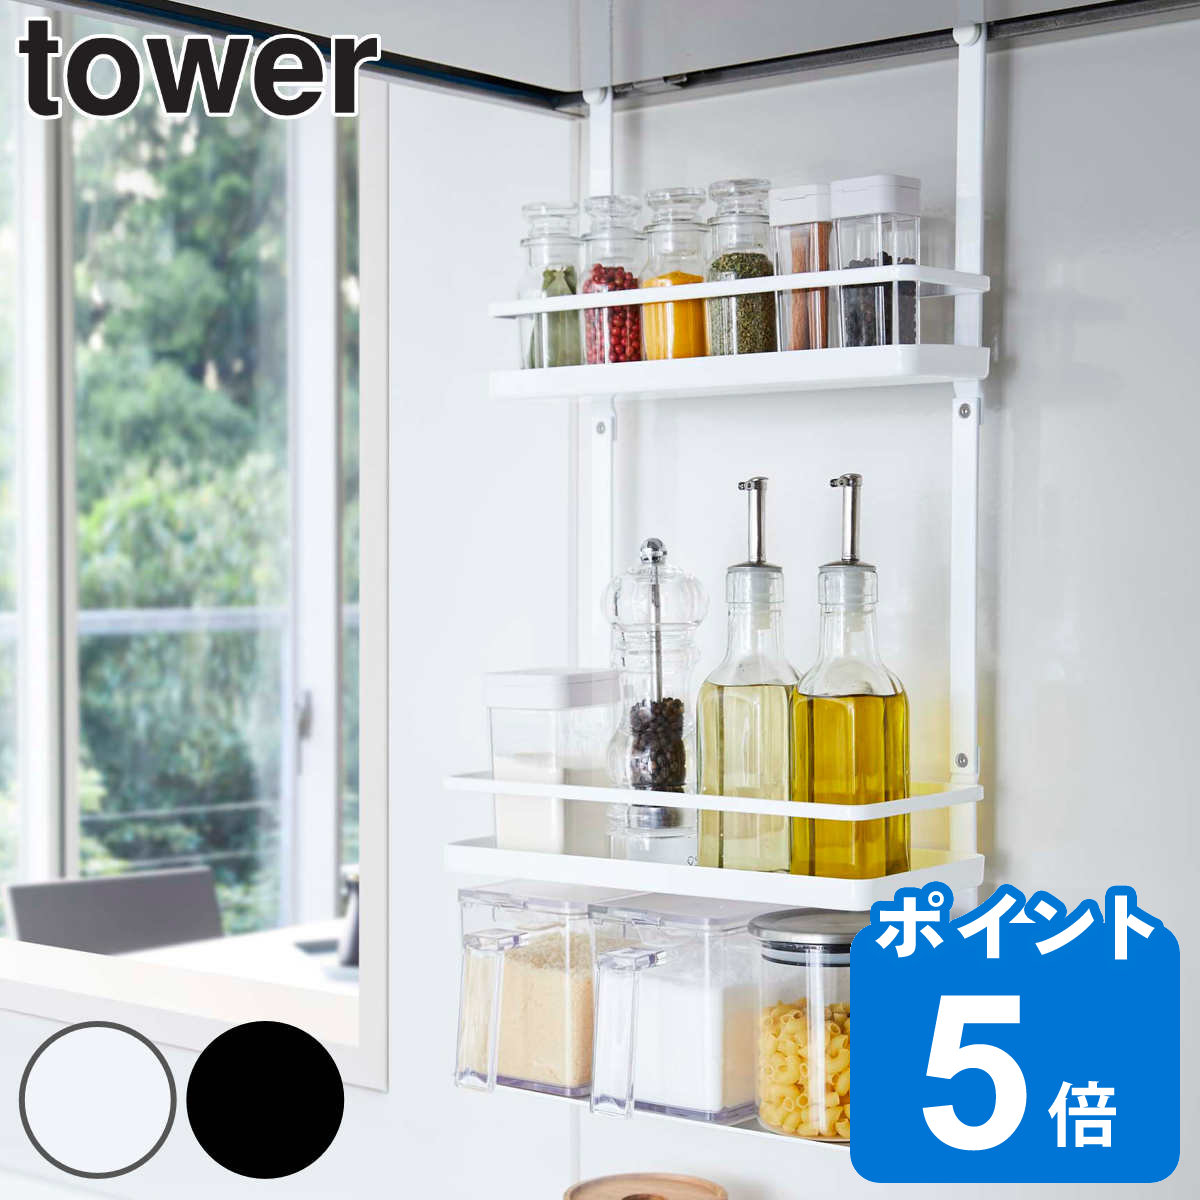 山崎実業 tower レンジフード調味料ラック タワー 3段